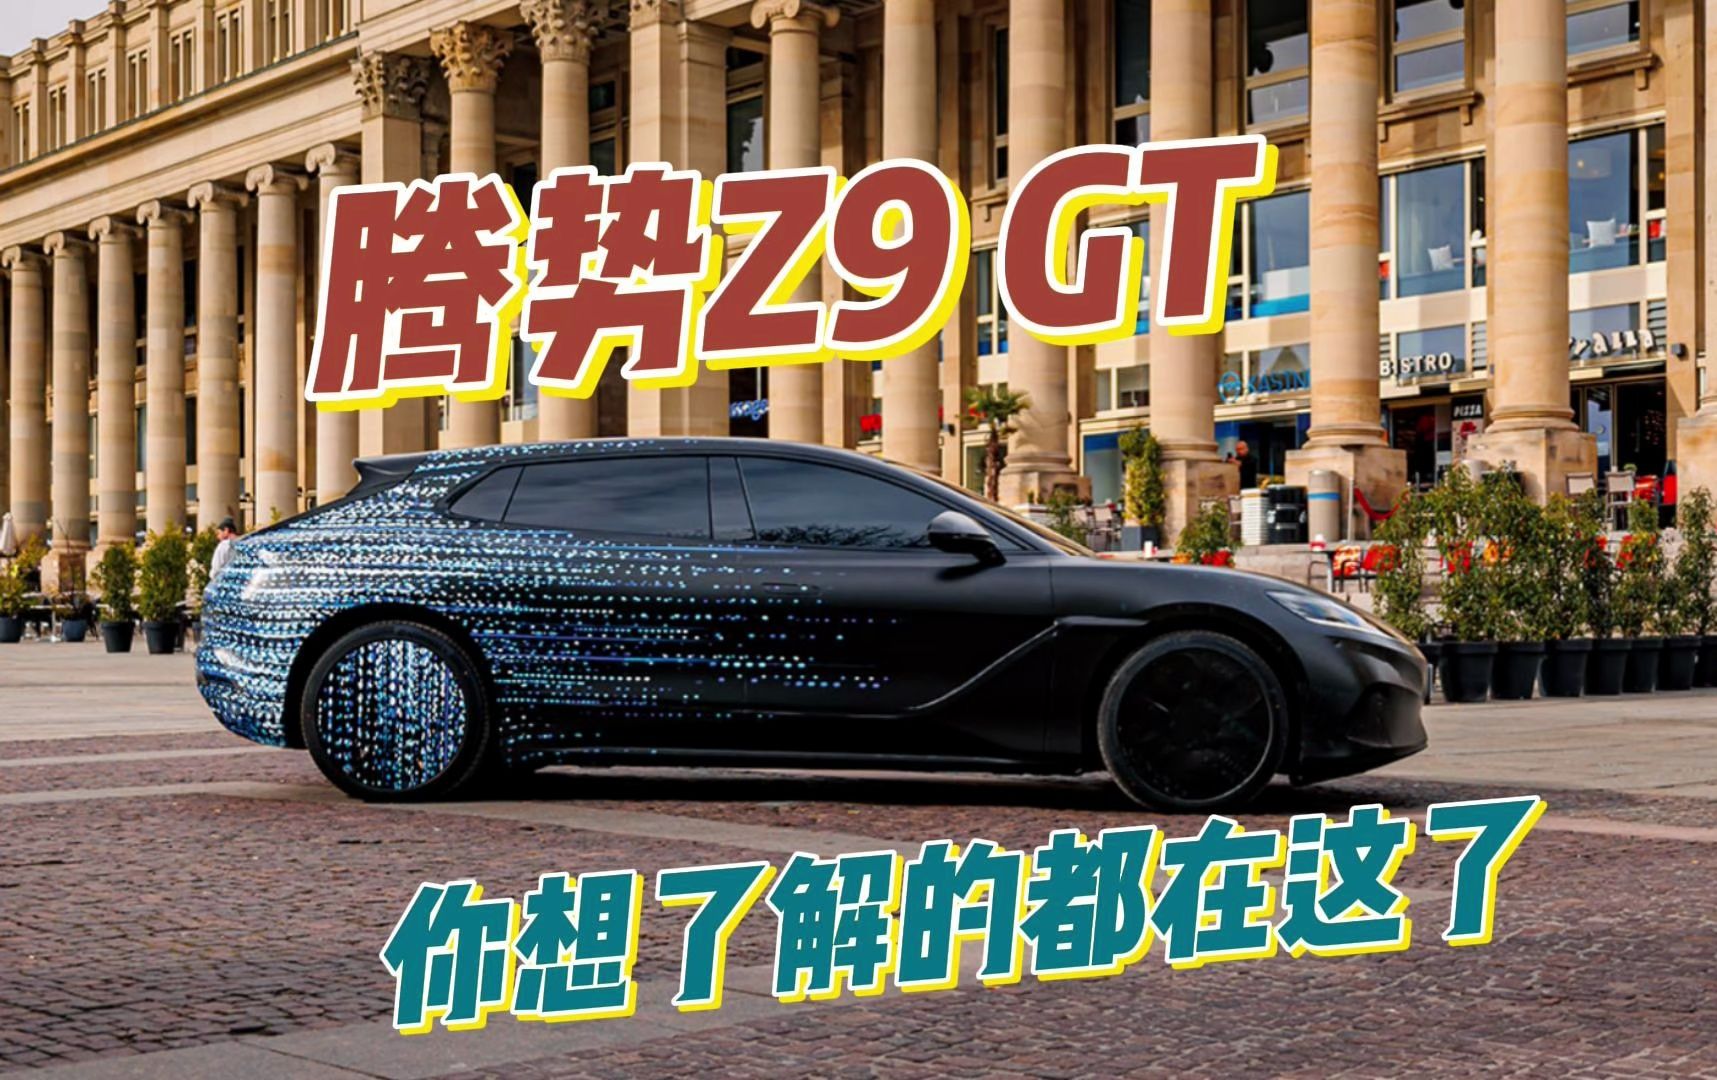 腾势旗舰轿车定名Z9 GT 预计北京车展亮相 谍照抢先看